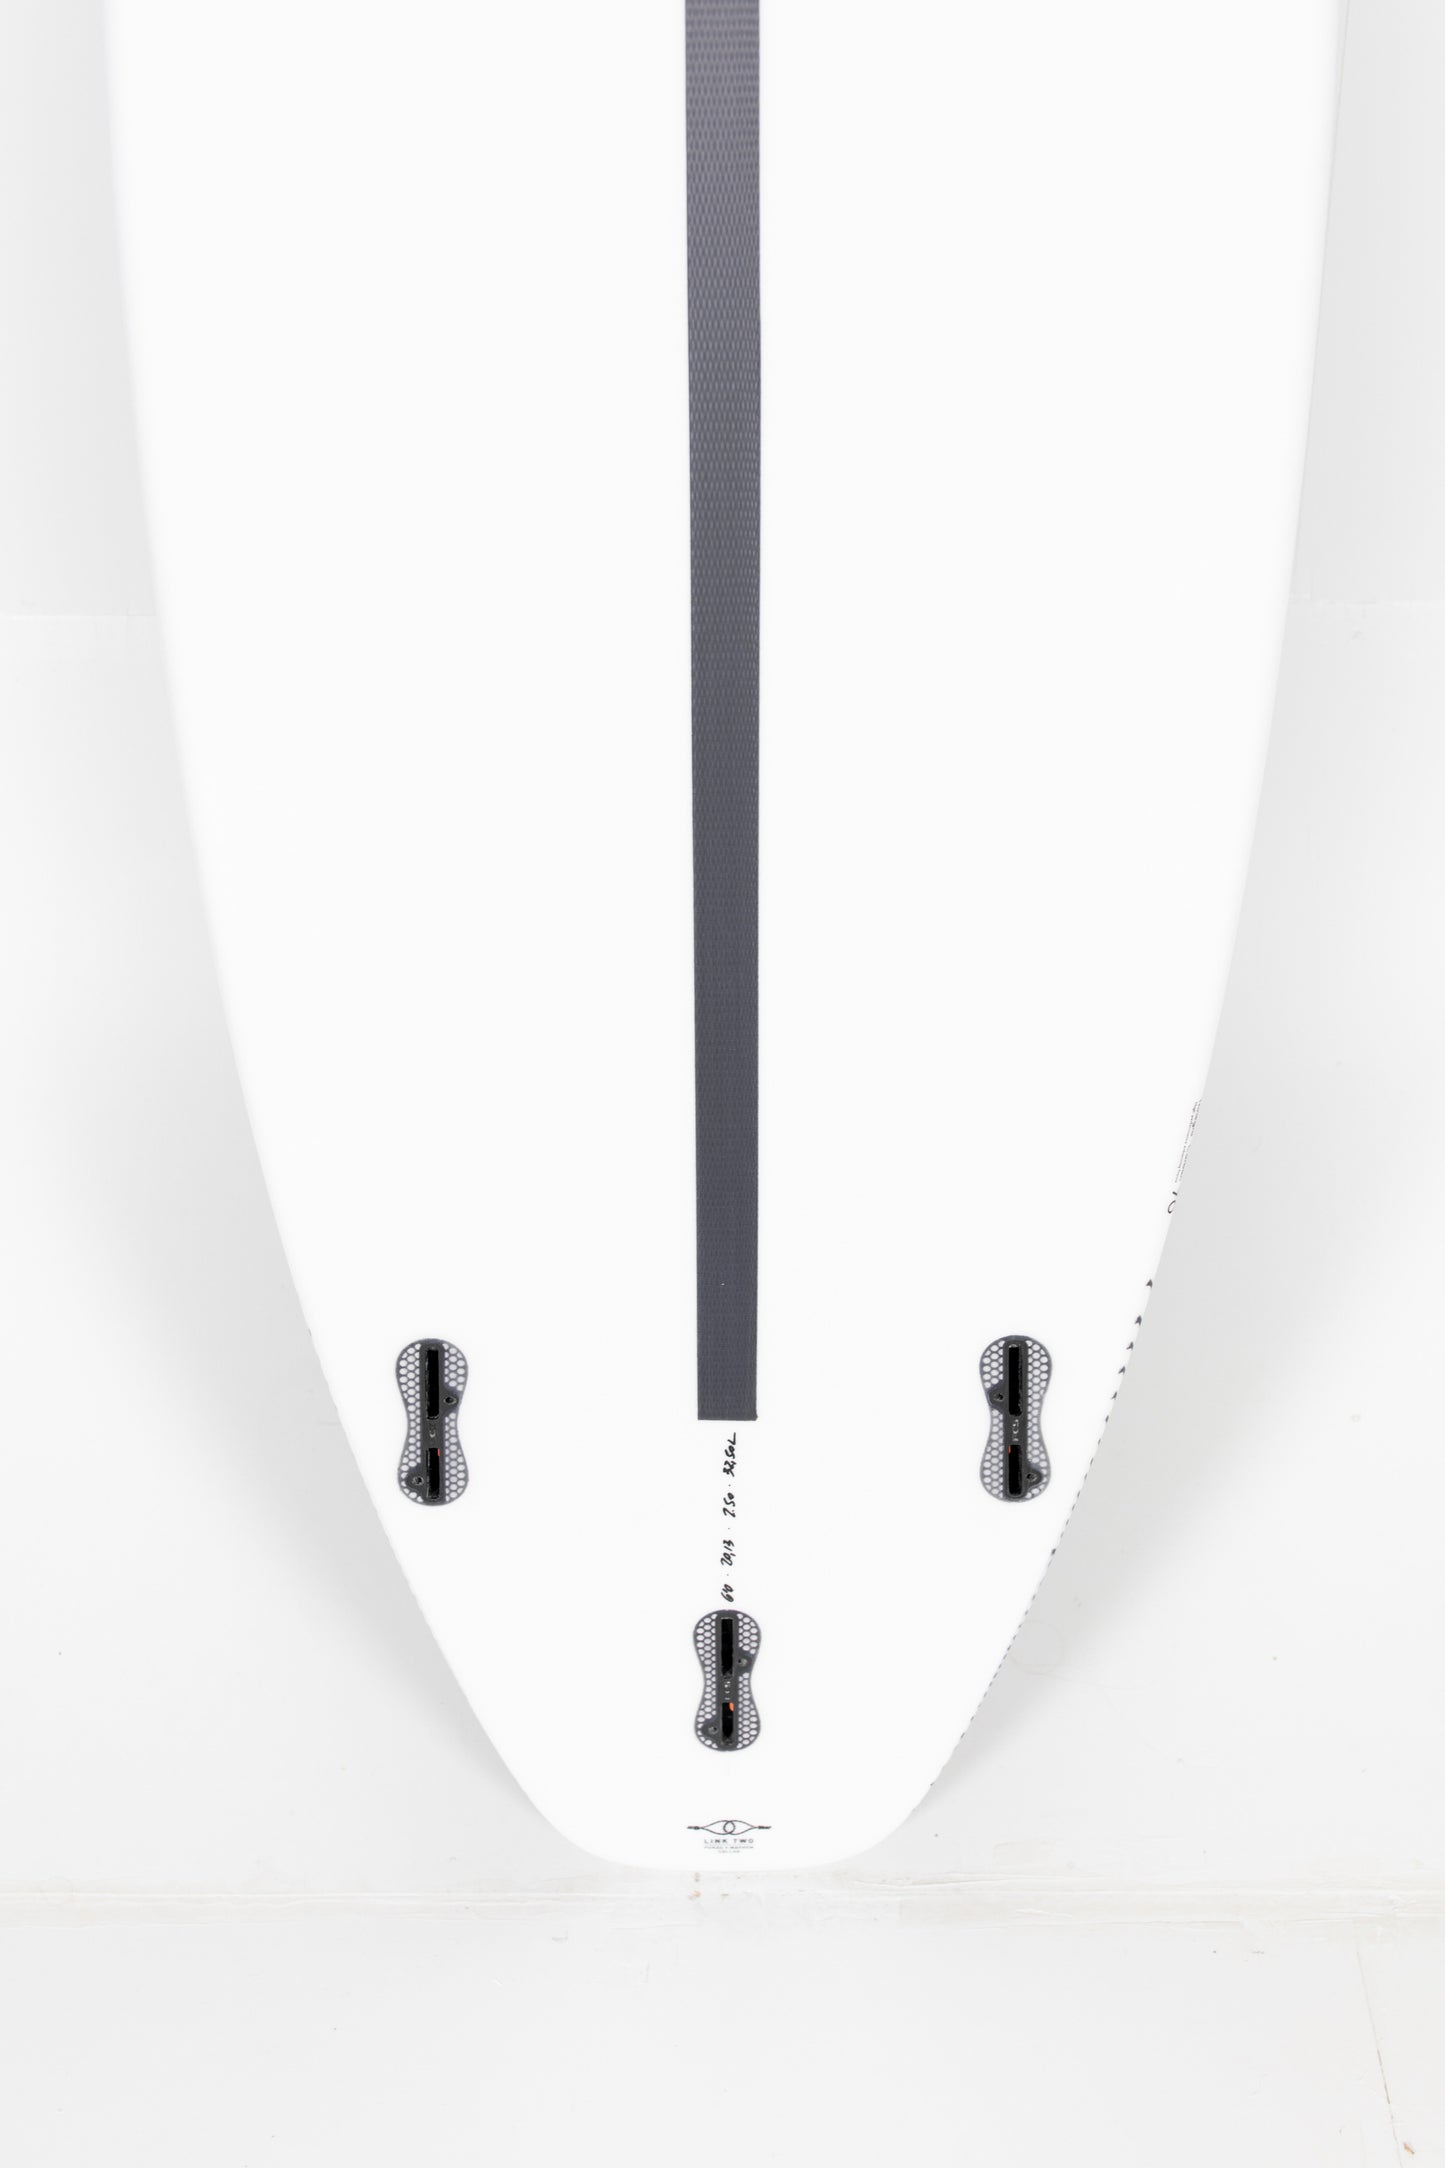 
                  
                    Pukas Surf Shop - Pukas Surfboard - INN·CA Tech - THE LINK 2  by Matt Biolos - 6'0” x 20,13" x 2.5 x 32.5L
                  
                